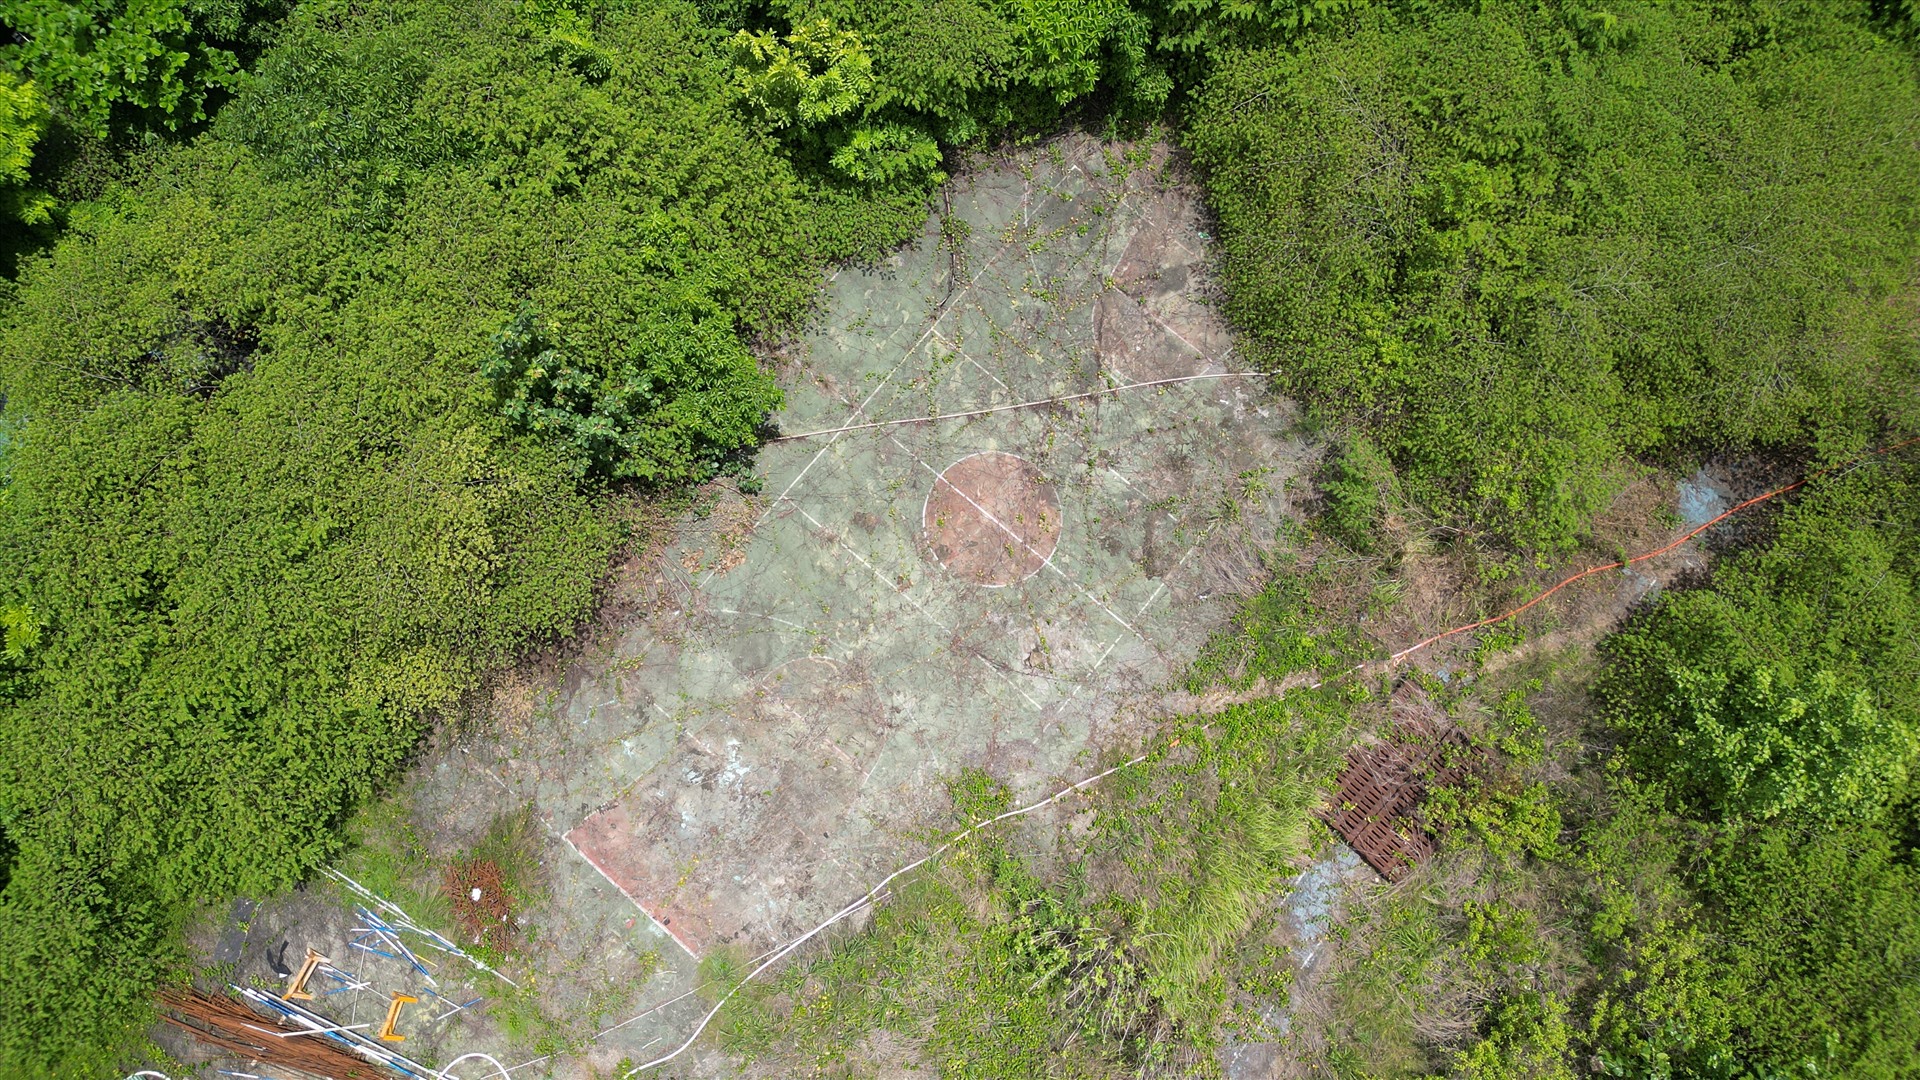 Khu vực sân cầu lông trước đây của Nhà thi đấu Phan Đình Phùng trở nên hoang tàn, cây dại mọc cao quá đầu người.